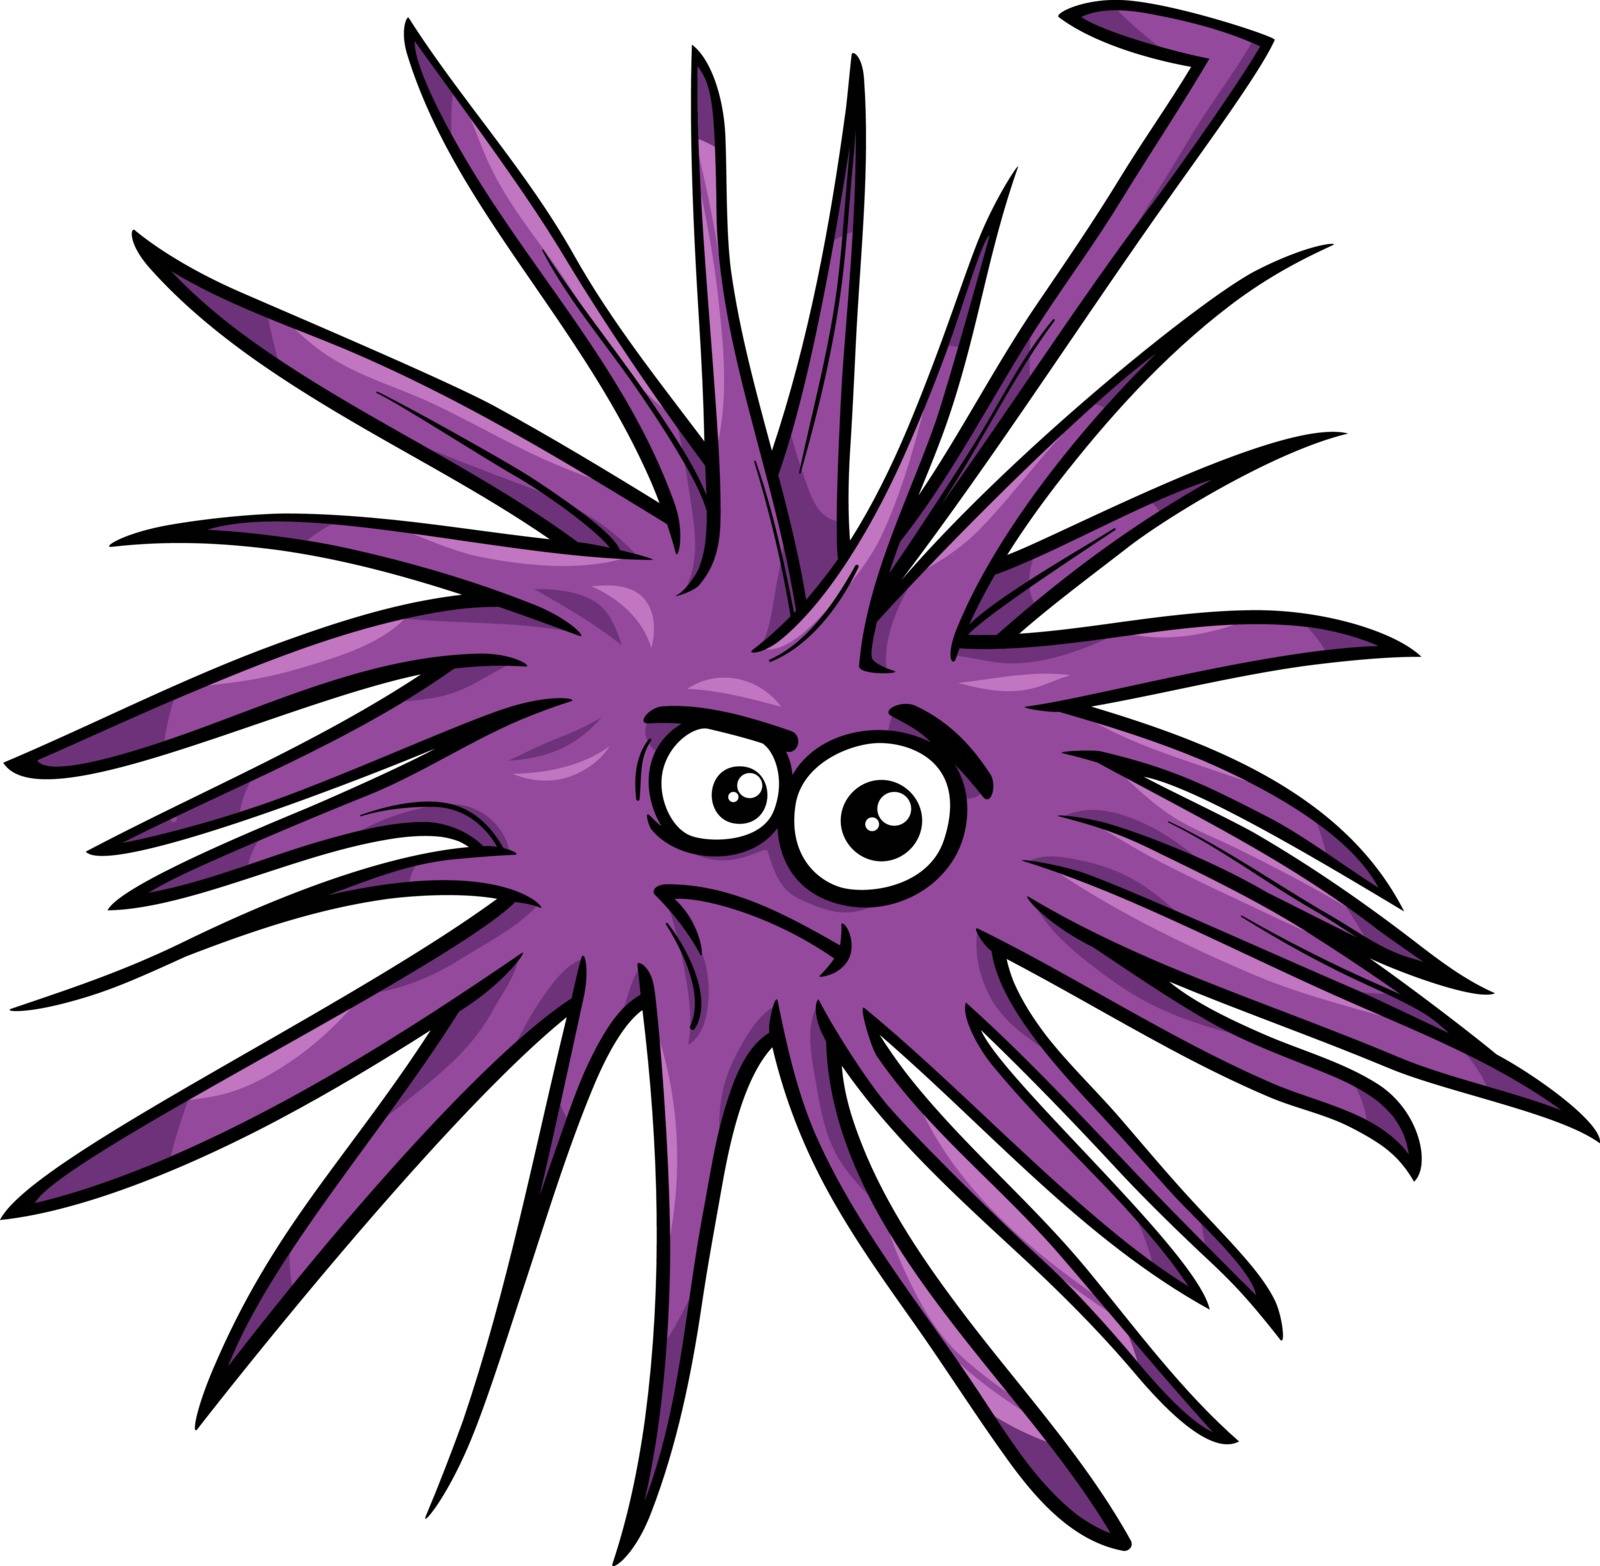 sea urchin cartoon illustration by izakowski